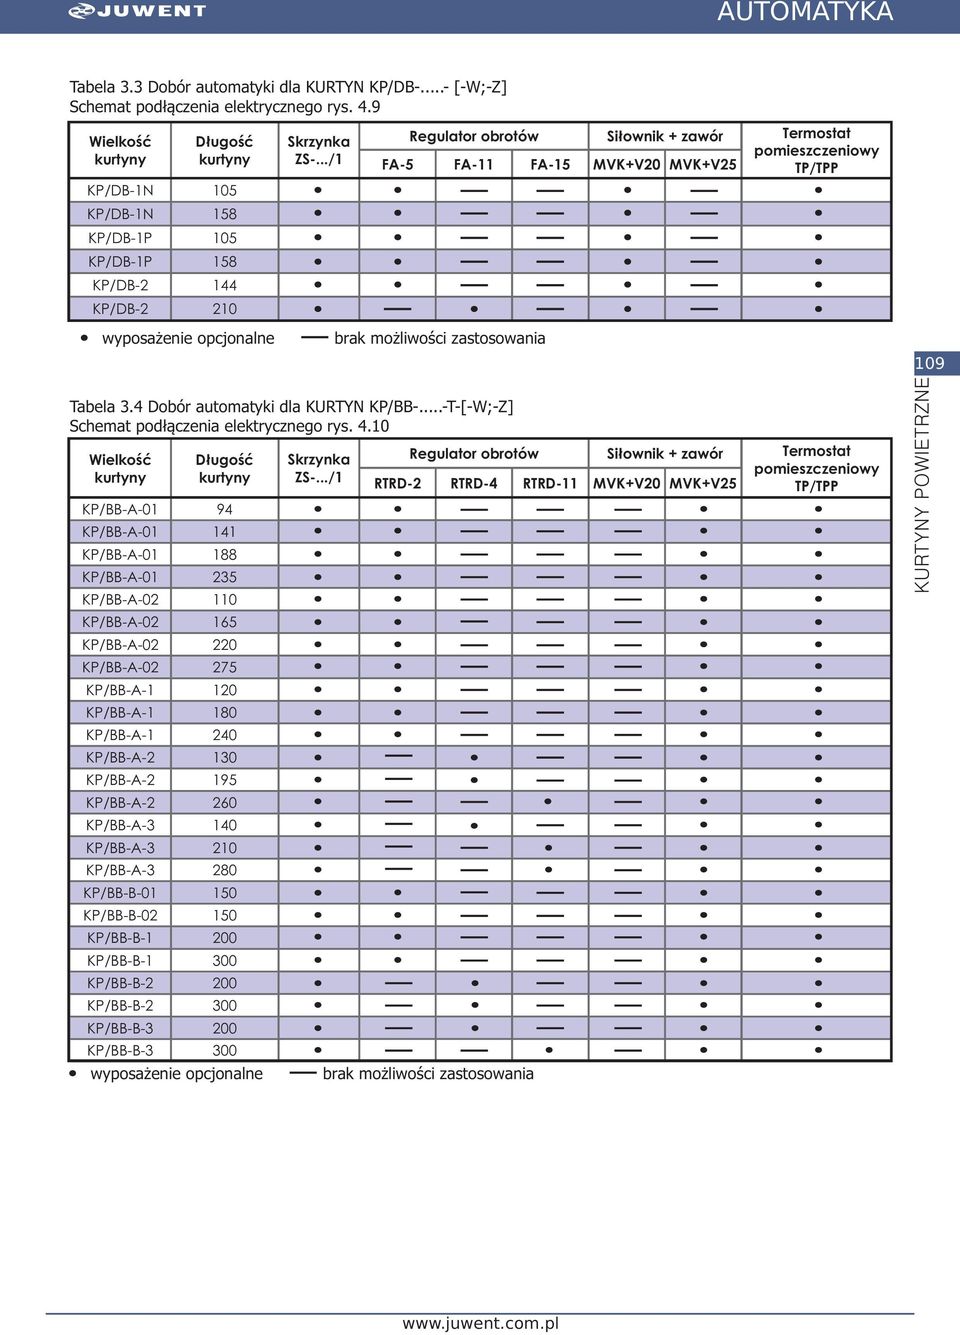 Tabela 3.4 Dobór automatyki dla KURTYN KP/BB-...-T-[-W;-Z] Schemat podłączenia elektrycznego rys. 4.